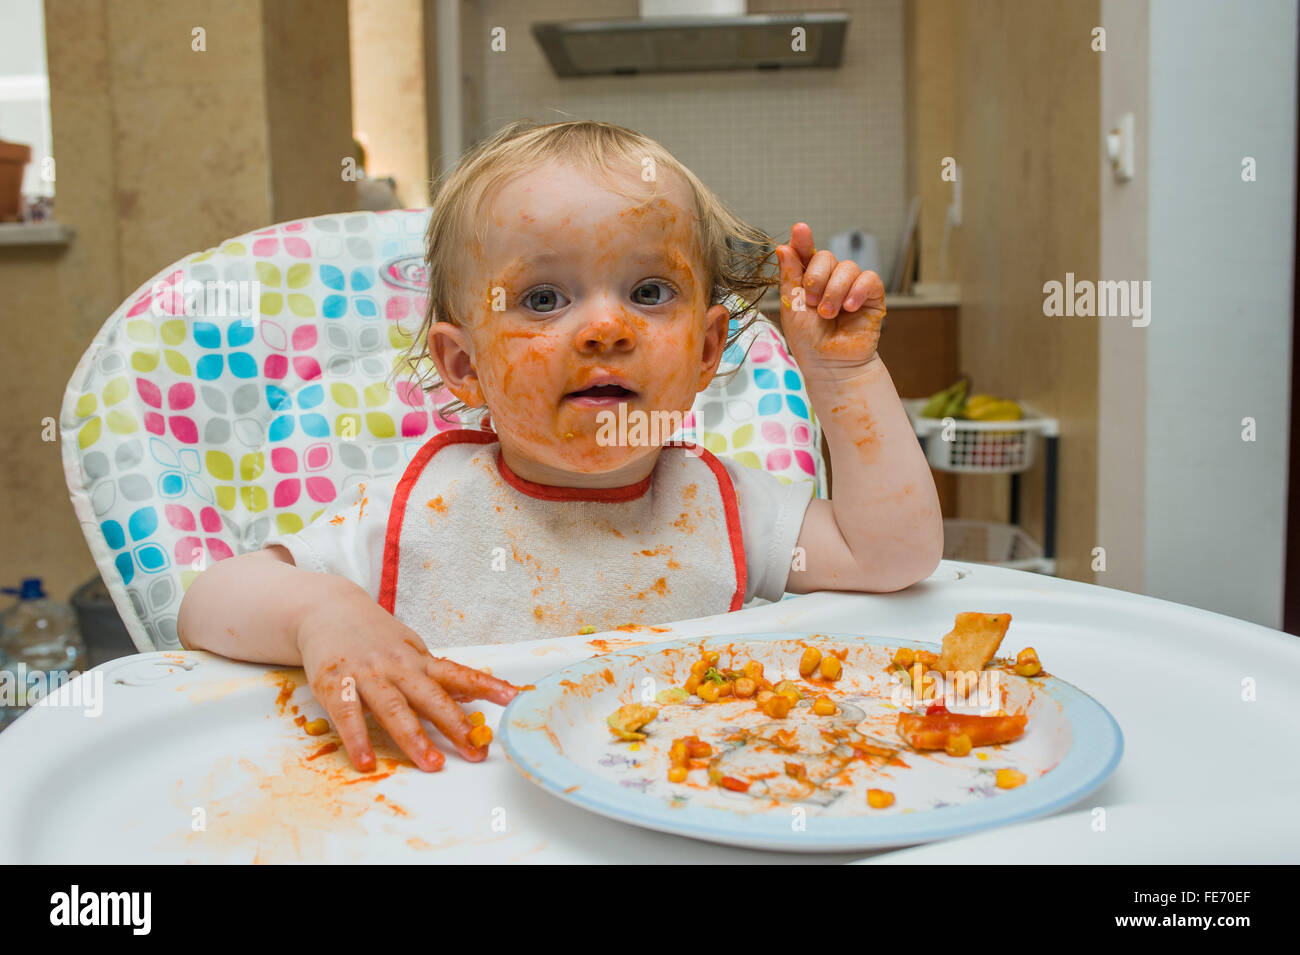 Una bambina (età 15 mesi) mangia un pasto a base di mais dolce e salsa di pomodoro in un modo disordinato e gioca con il suo cibo su una sedia alta Foto Stock